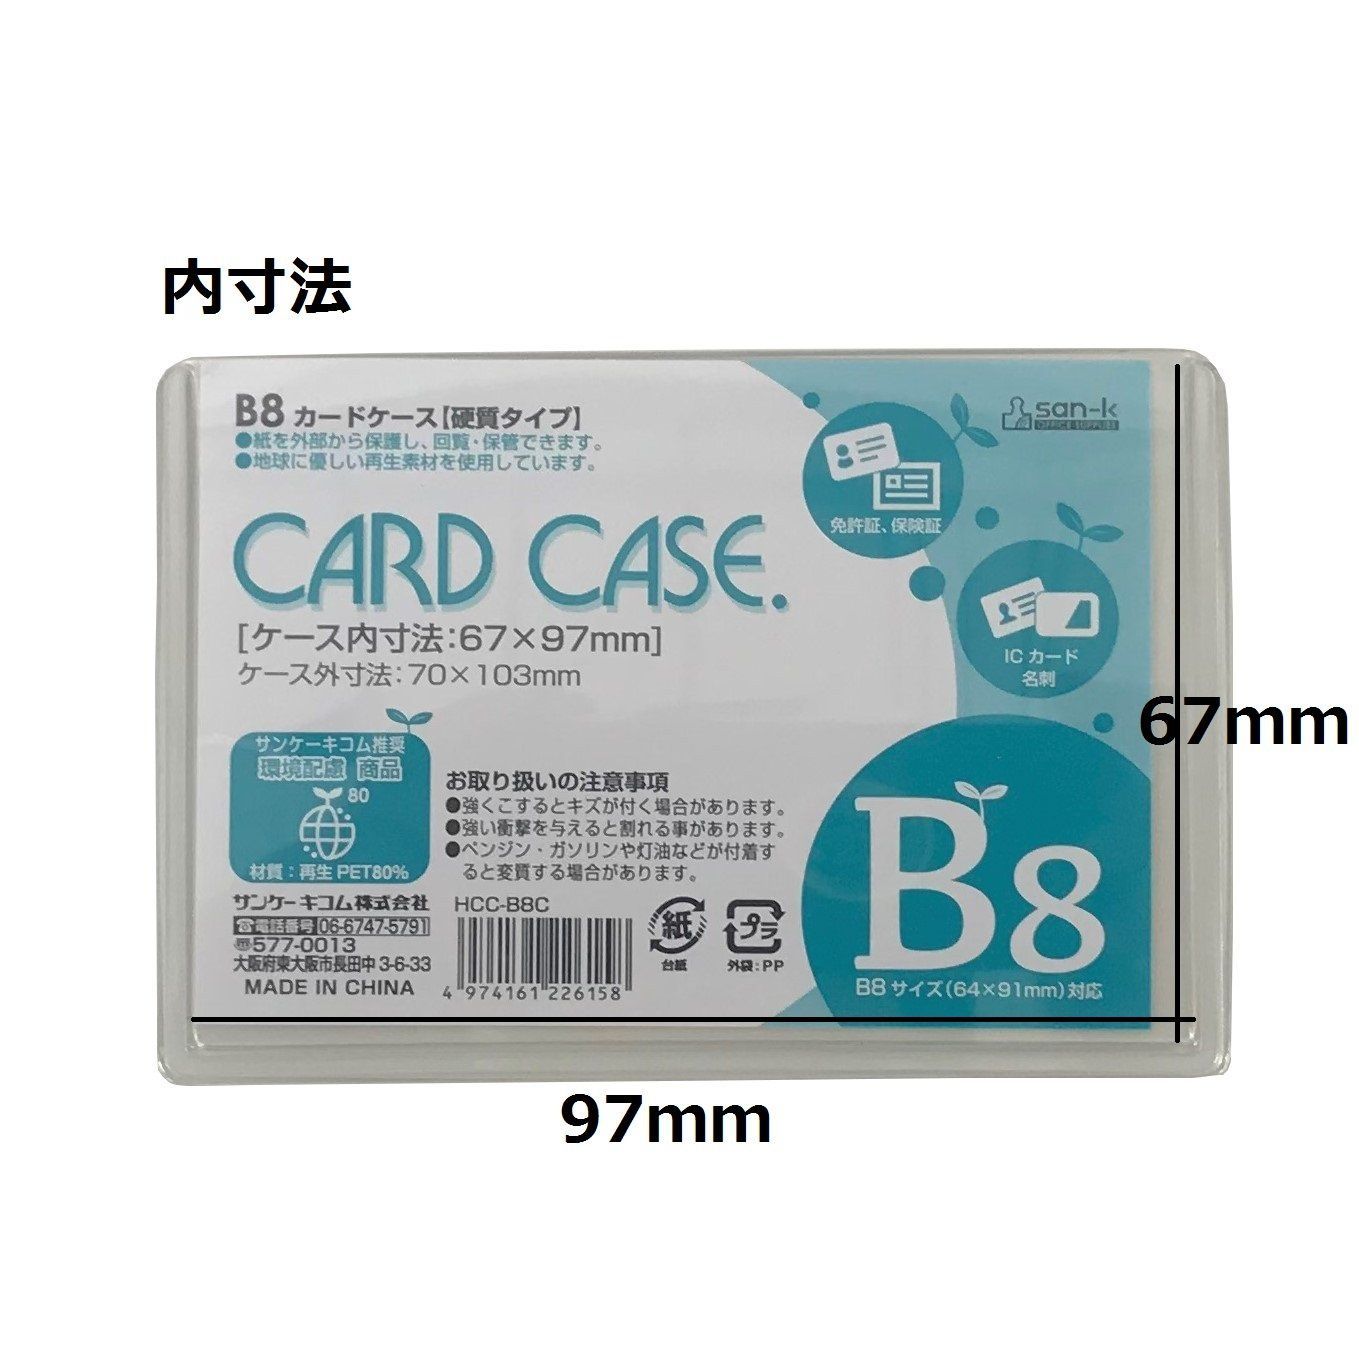 特価商品】HCC-B8C-10 B8 10枚セット 再生PET ハードタイプ カードケース サンケーキコム swellstore メルカリ